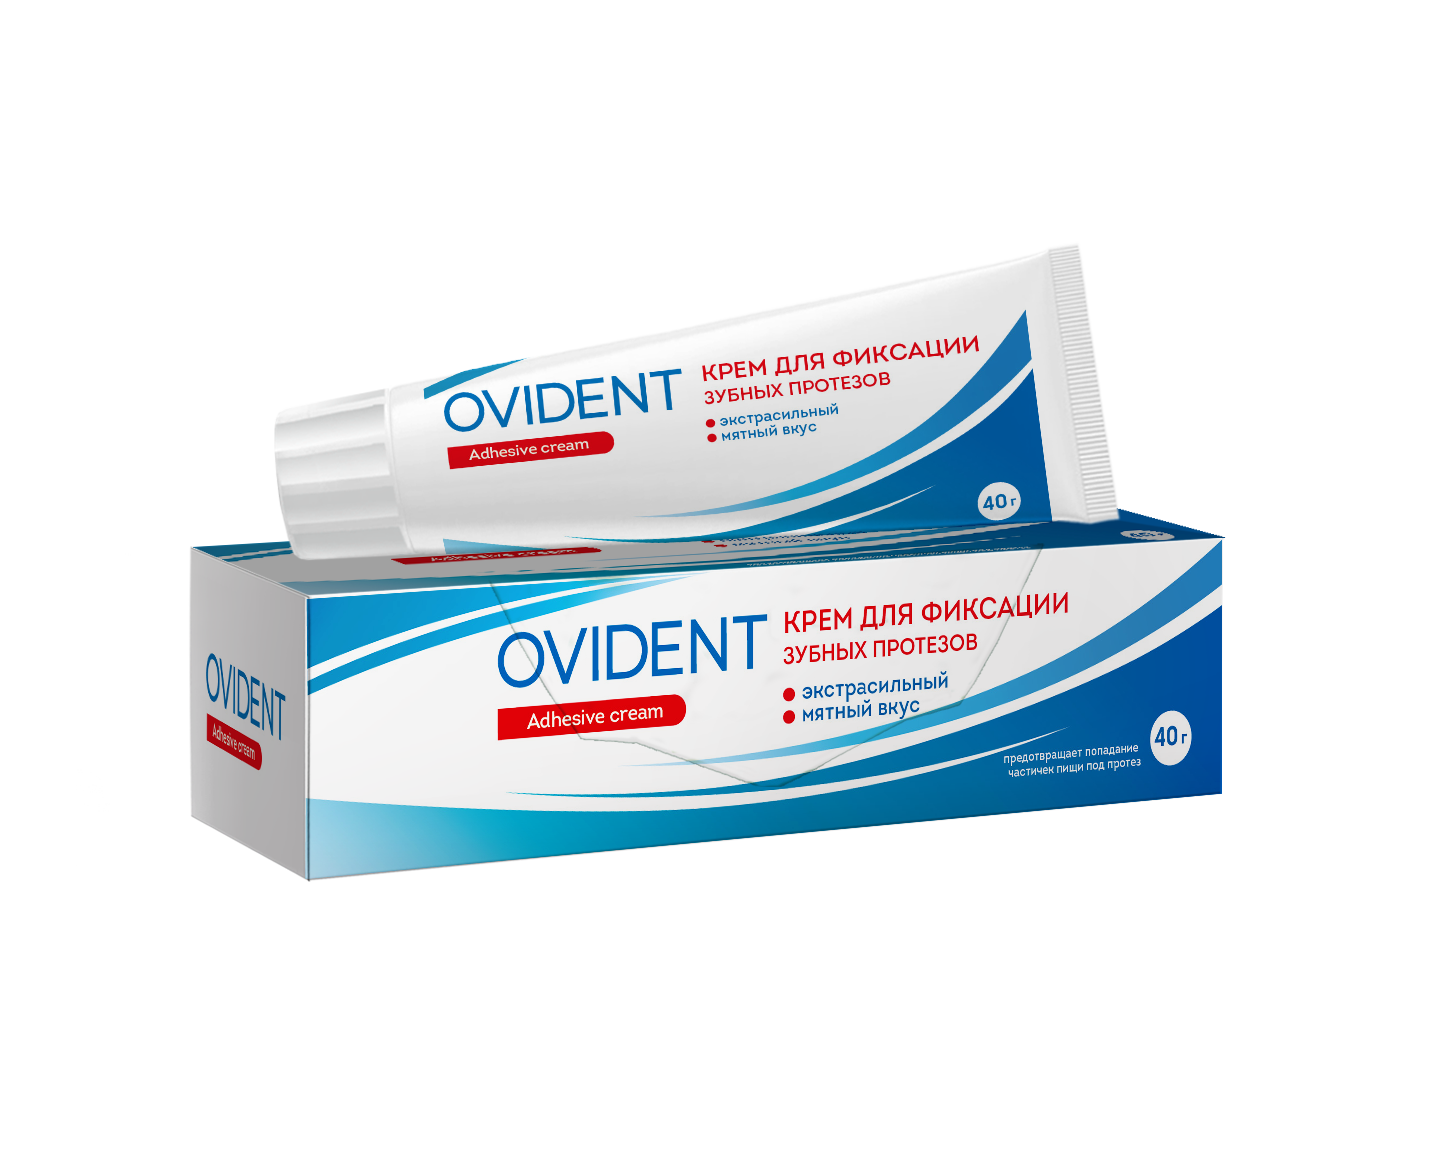 OVIDENT, Крем для фиксации зубных протезов Экстрасильный, 40 мг крем для фиксации зубных протезов hilfen со вкусом мяты 40 г